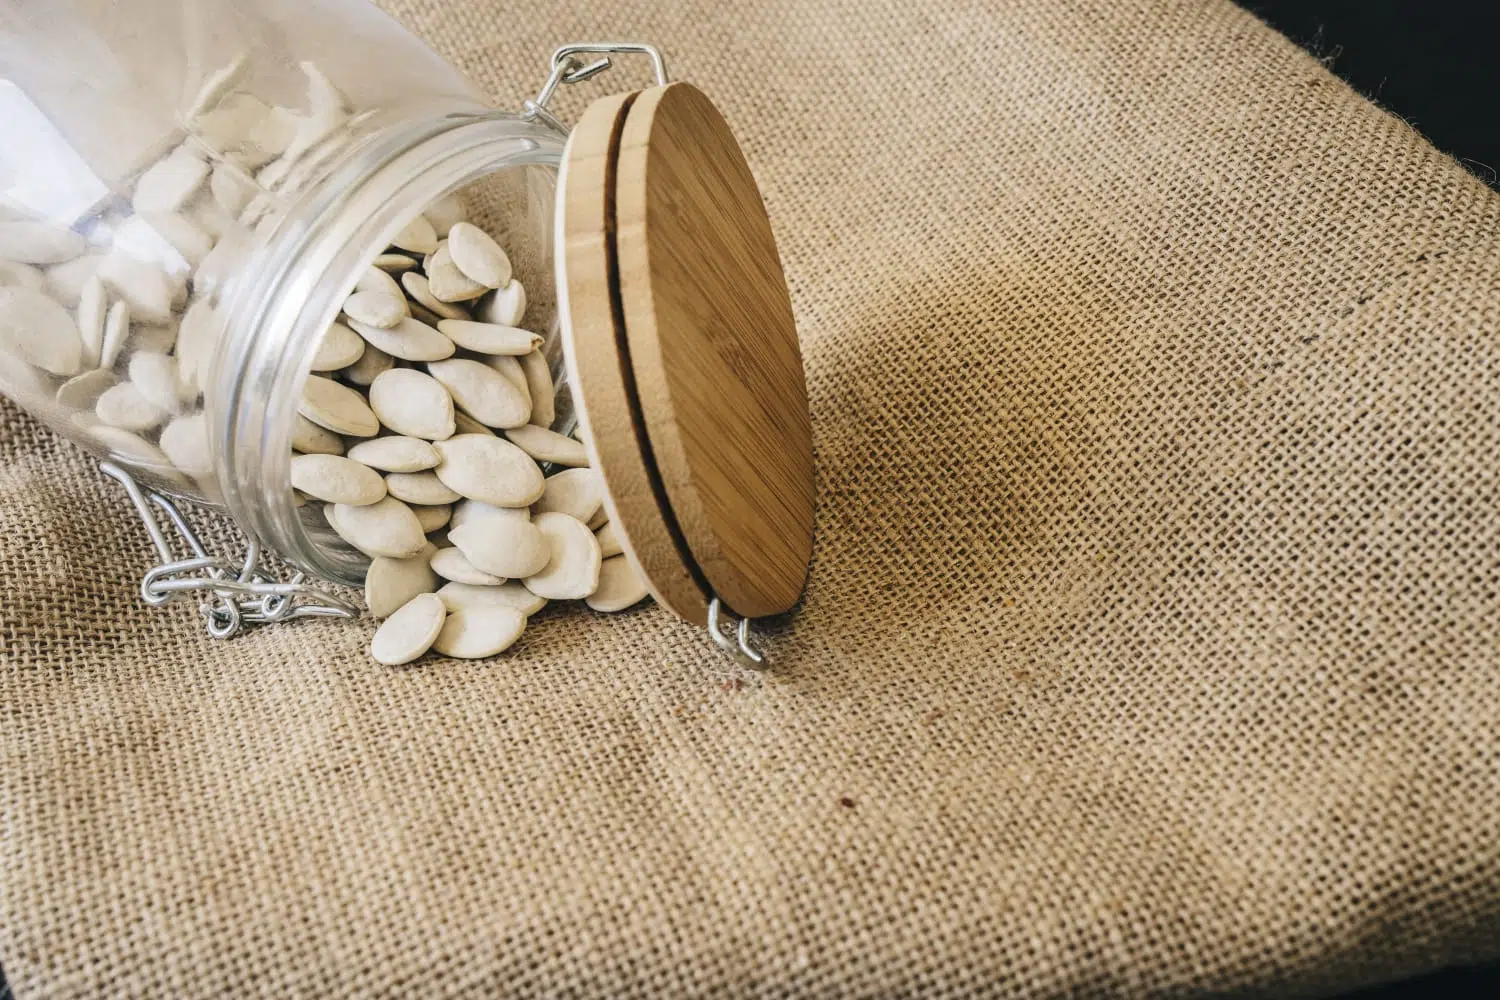  sementes de abóbora